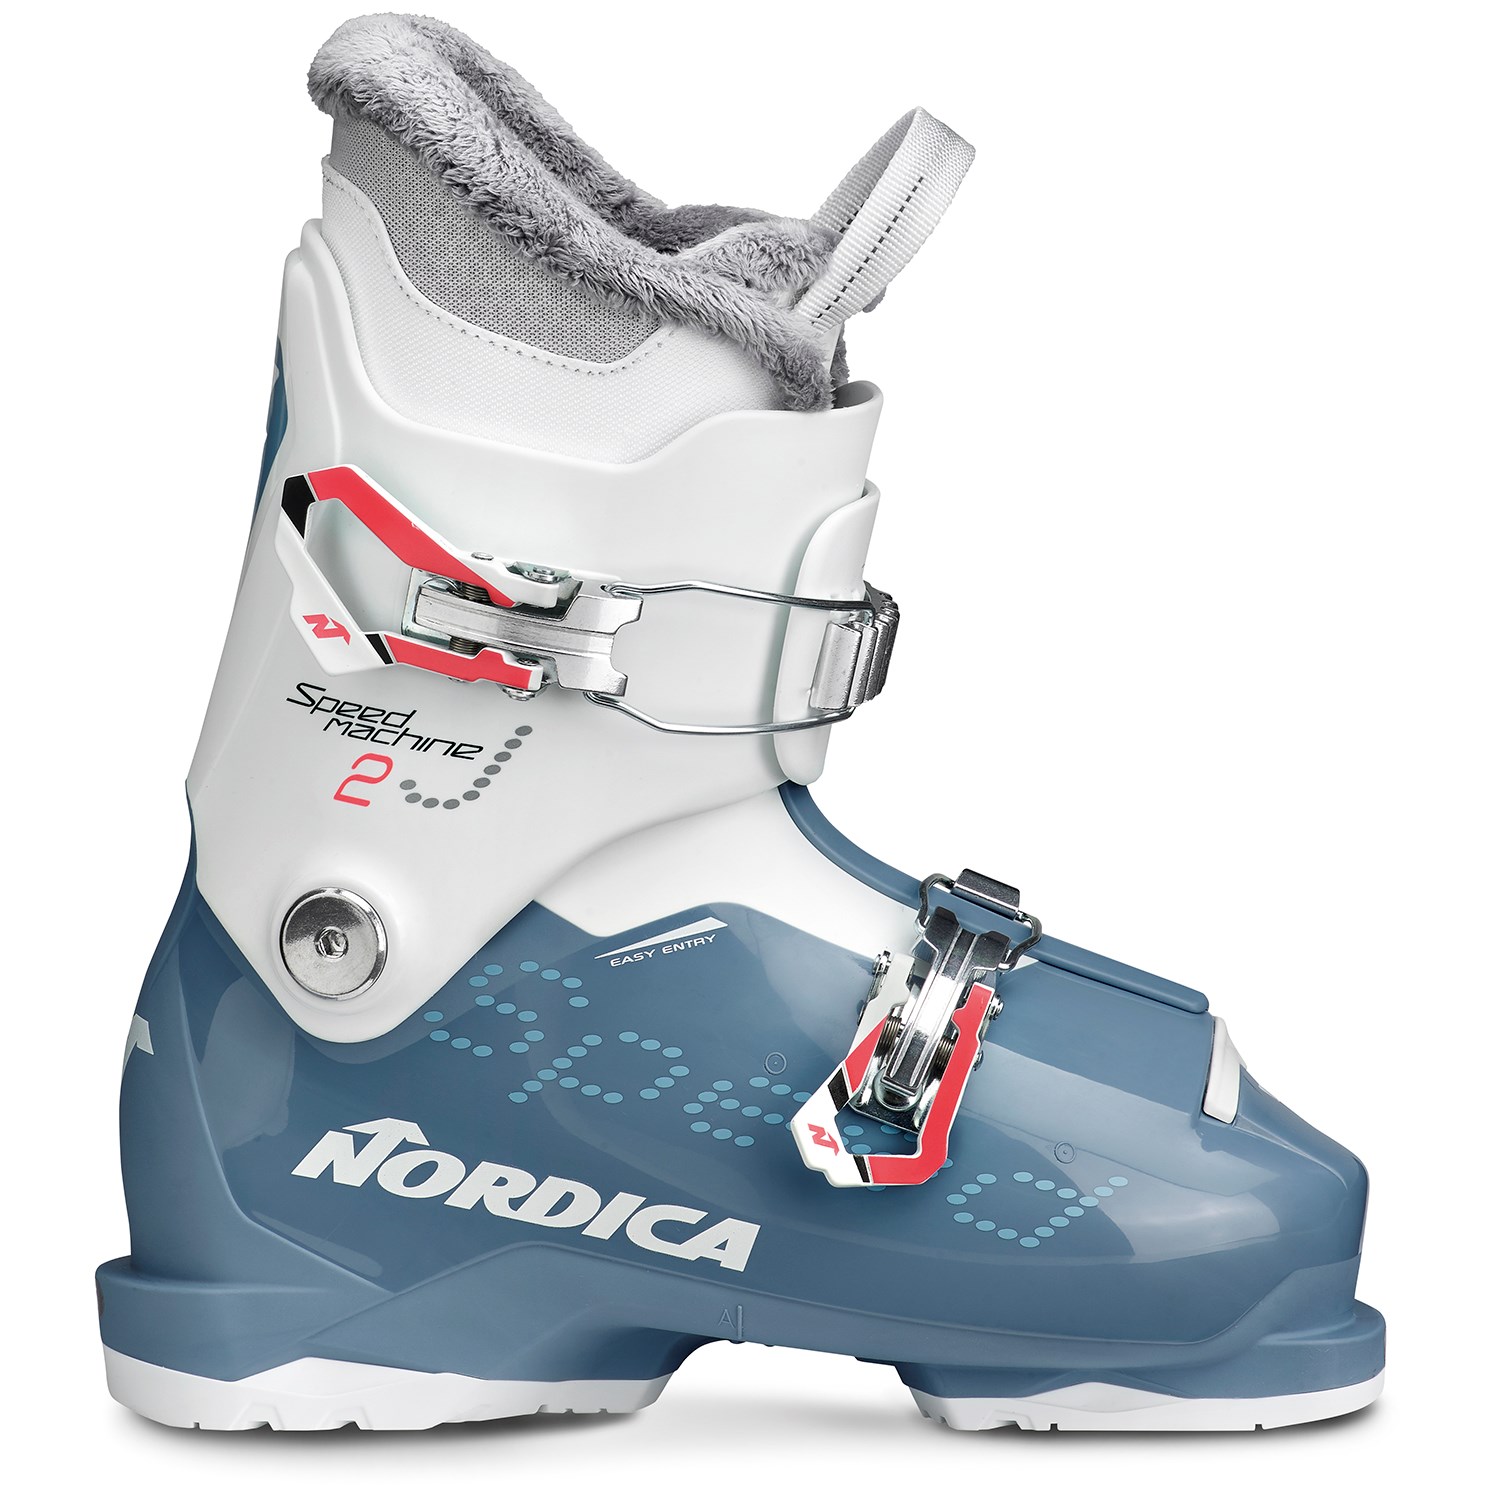 17.5 ski boots